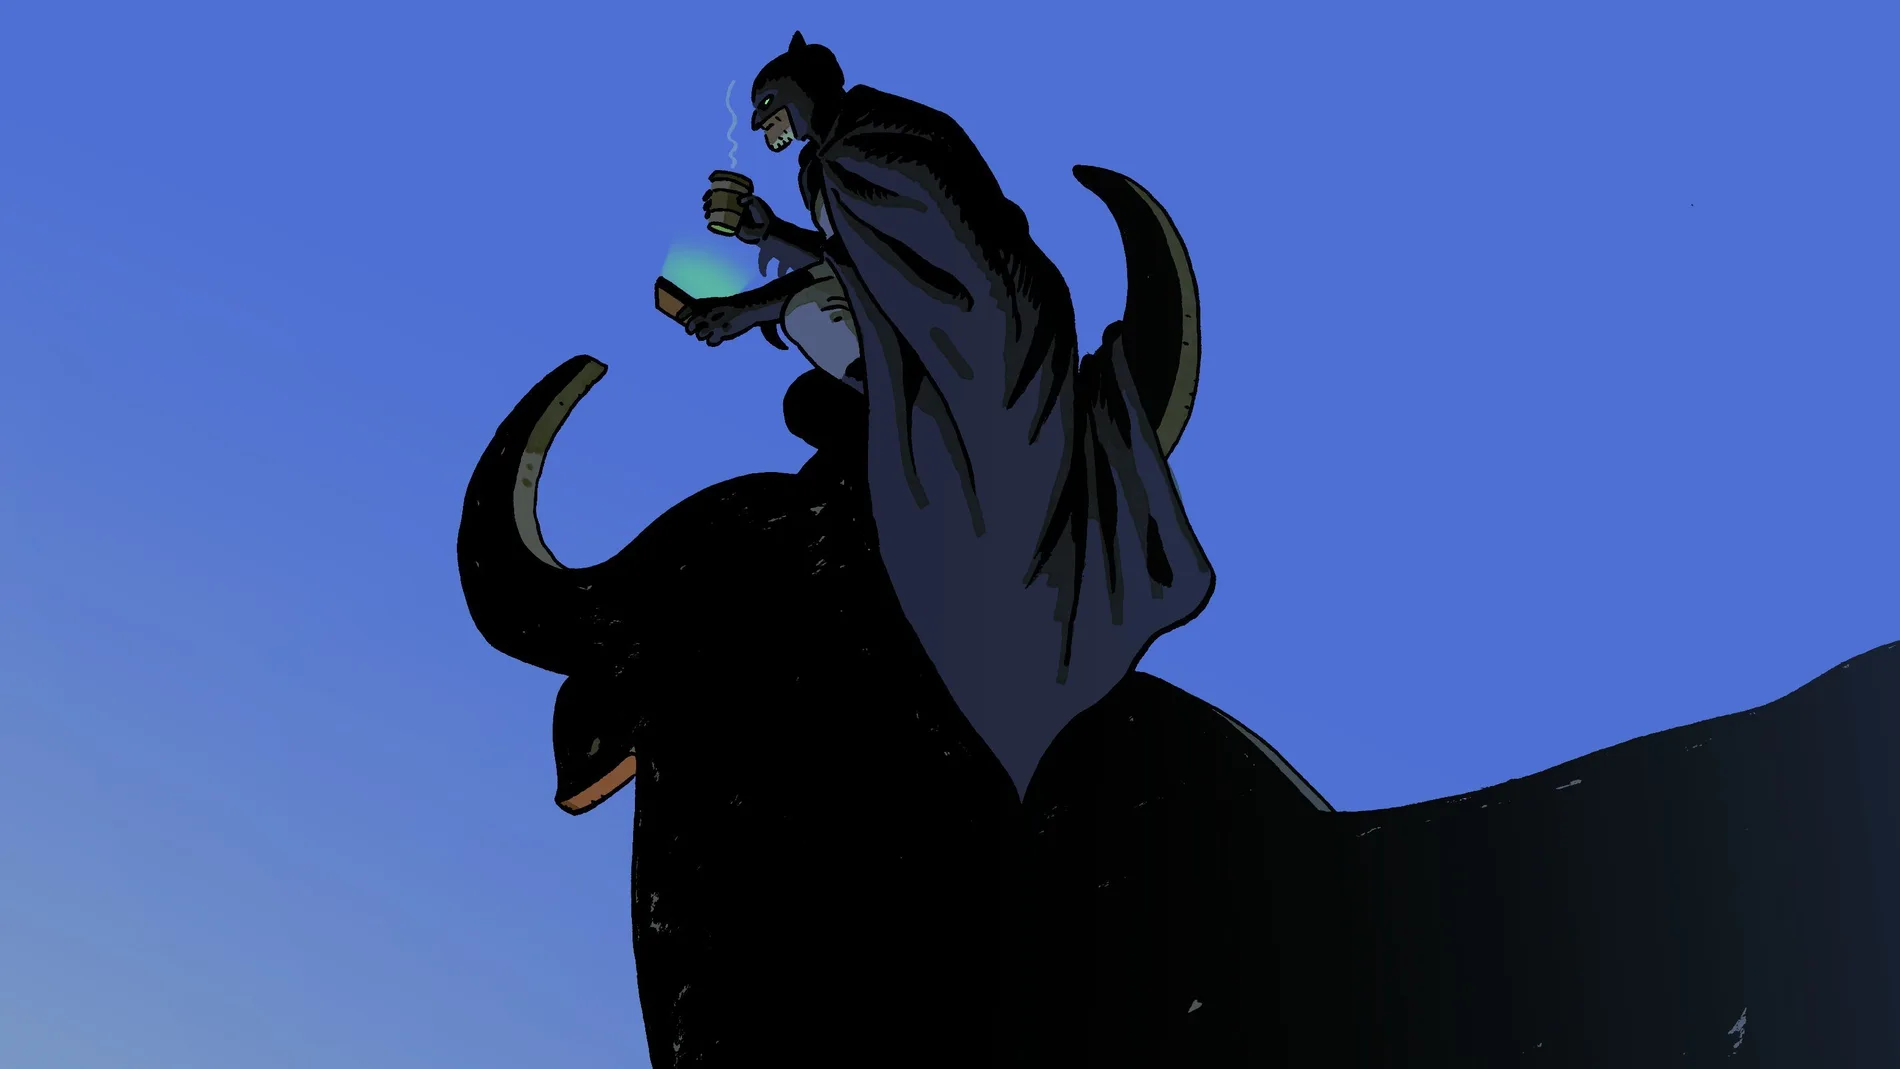 Una imagen de Batman sobre el emblemático toro de Osborne, en la nueva historia creada por Paco Roca